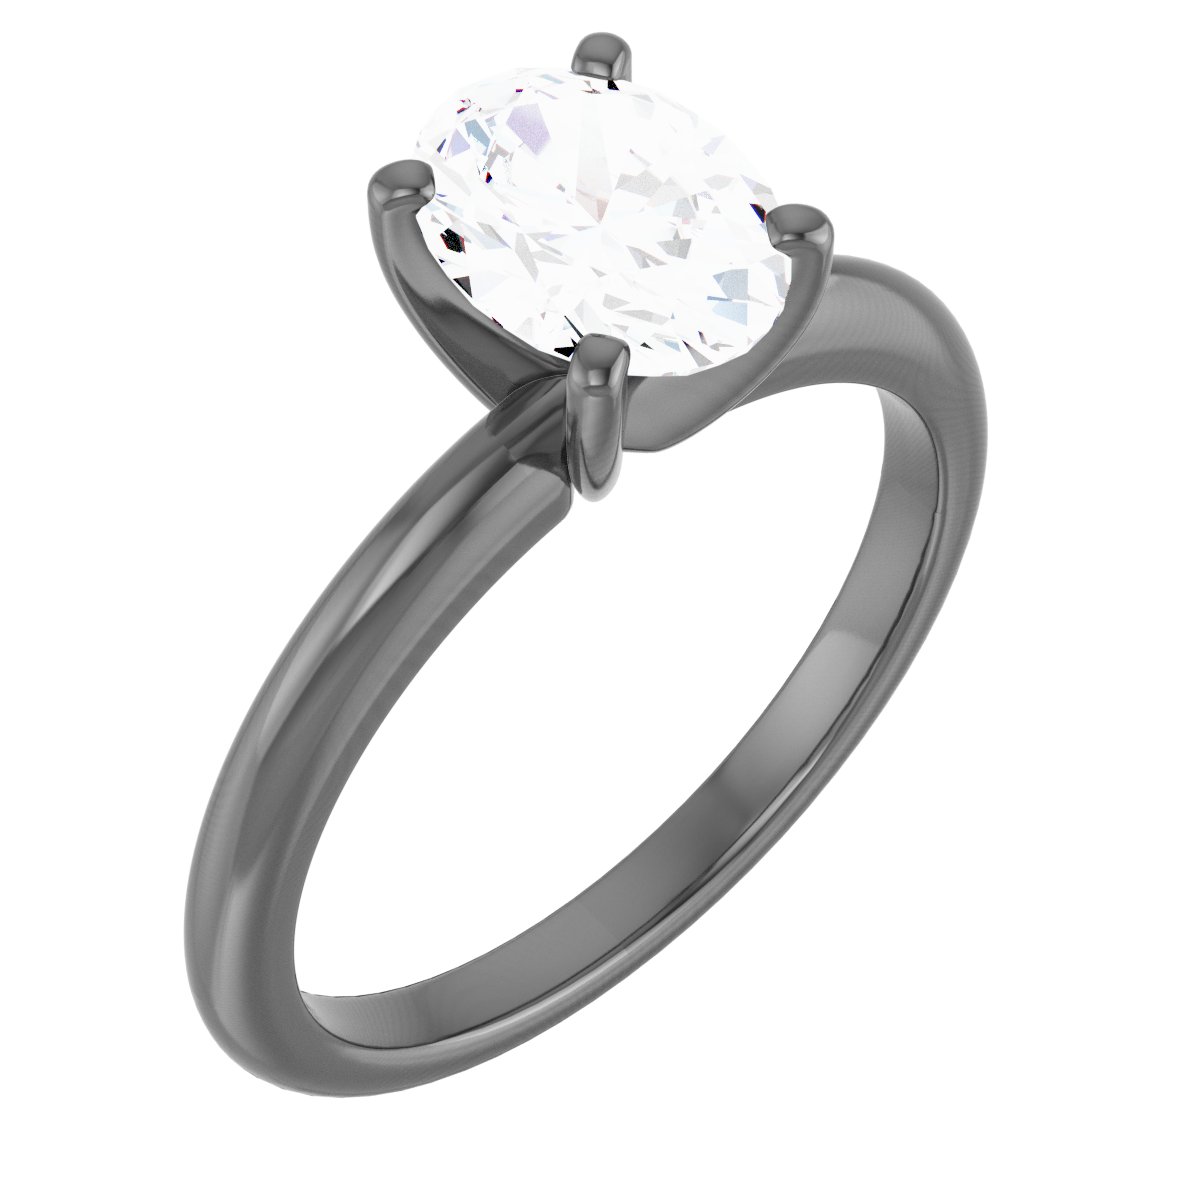 14K White 8x6 mm Oval Forever One Moissanite Engagement Ring Ref 13842788